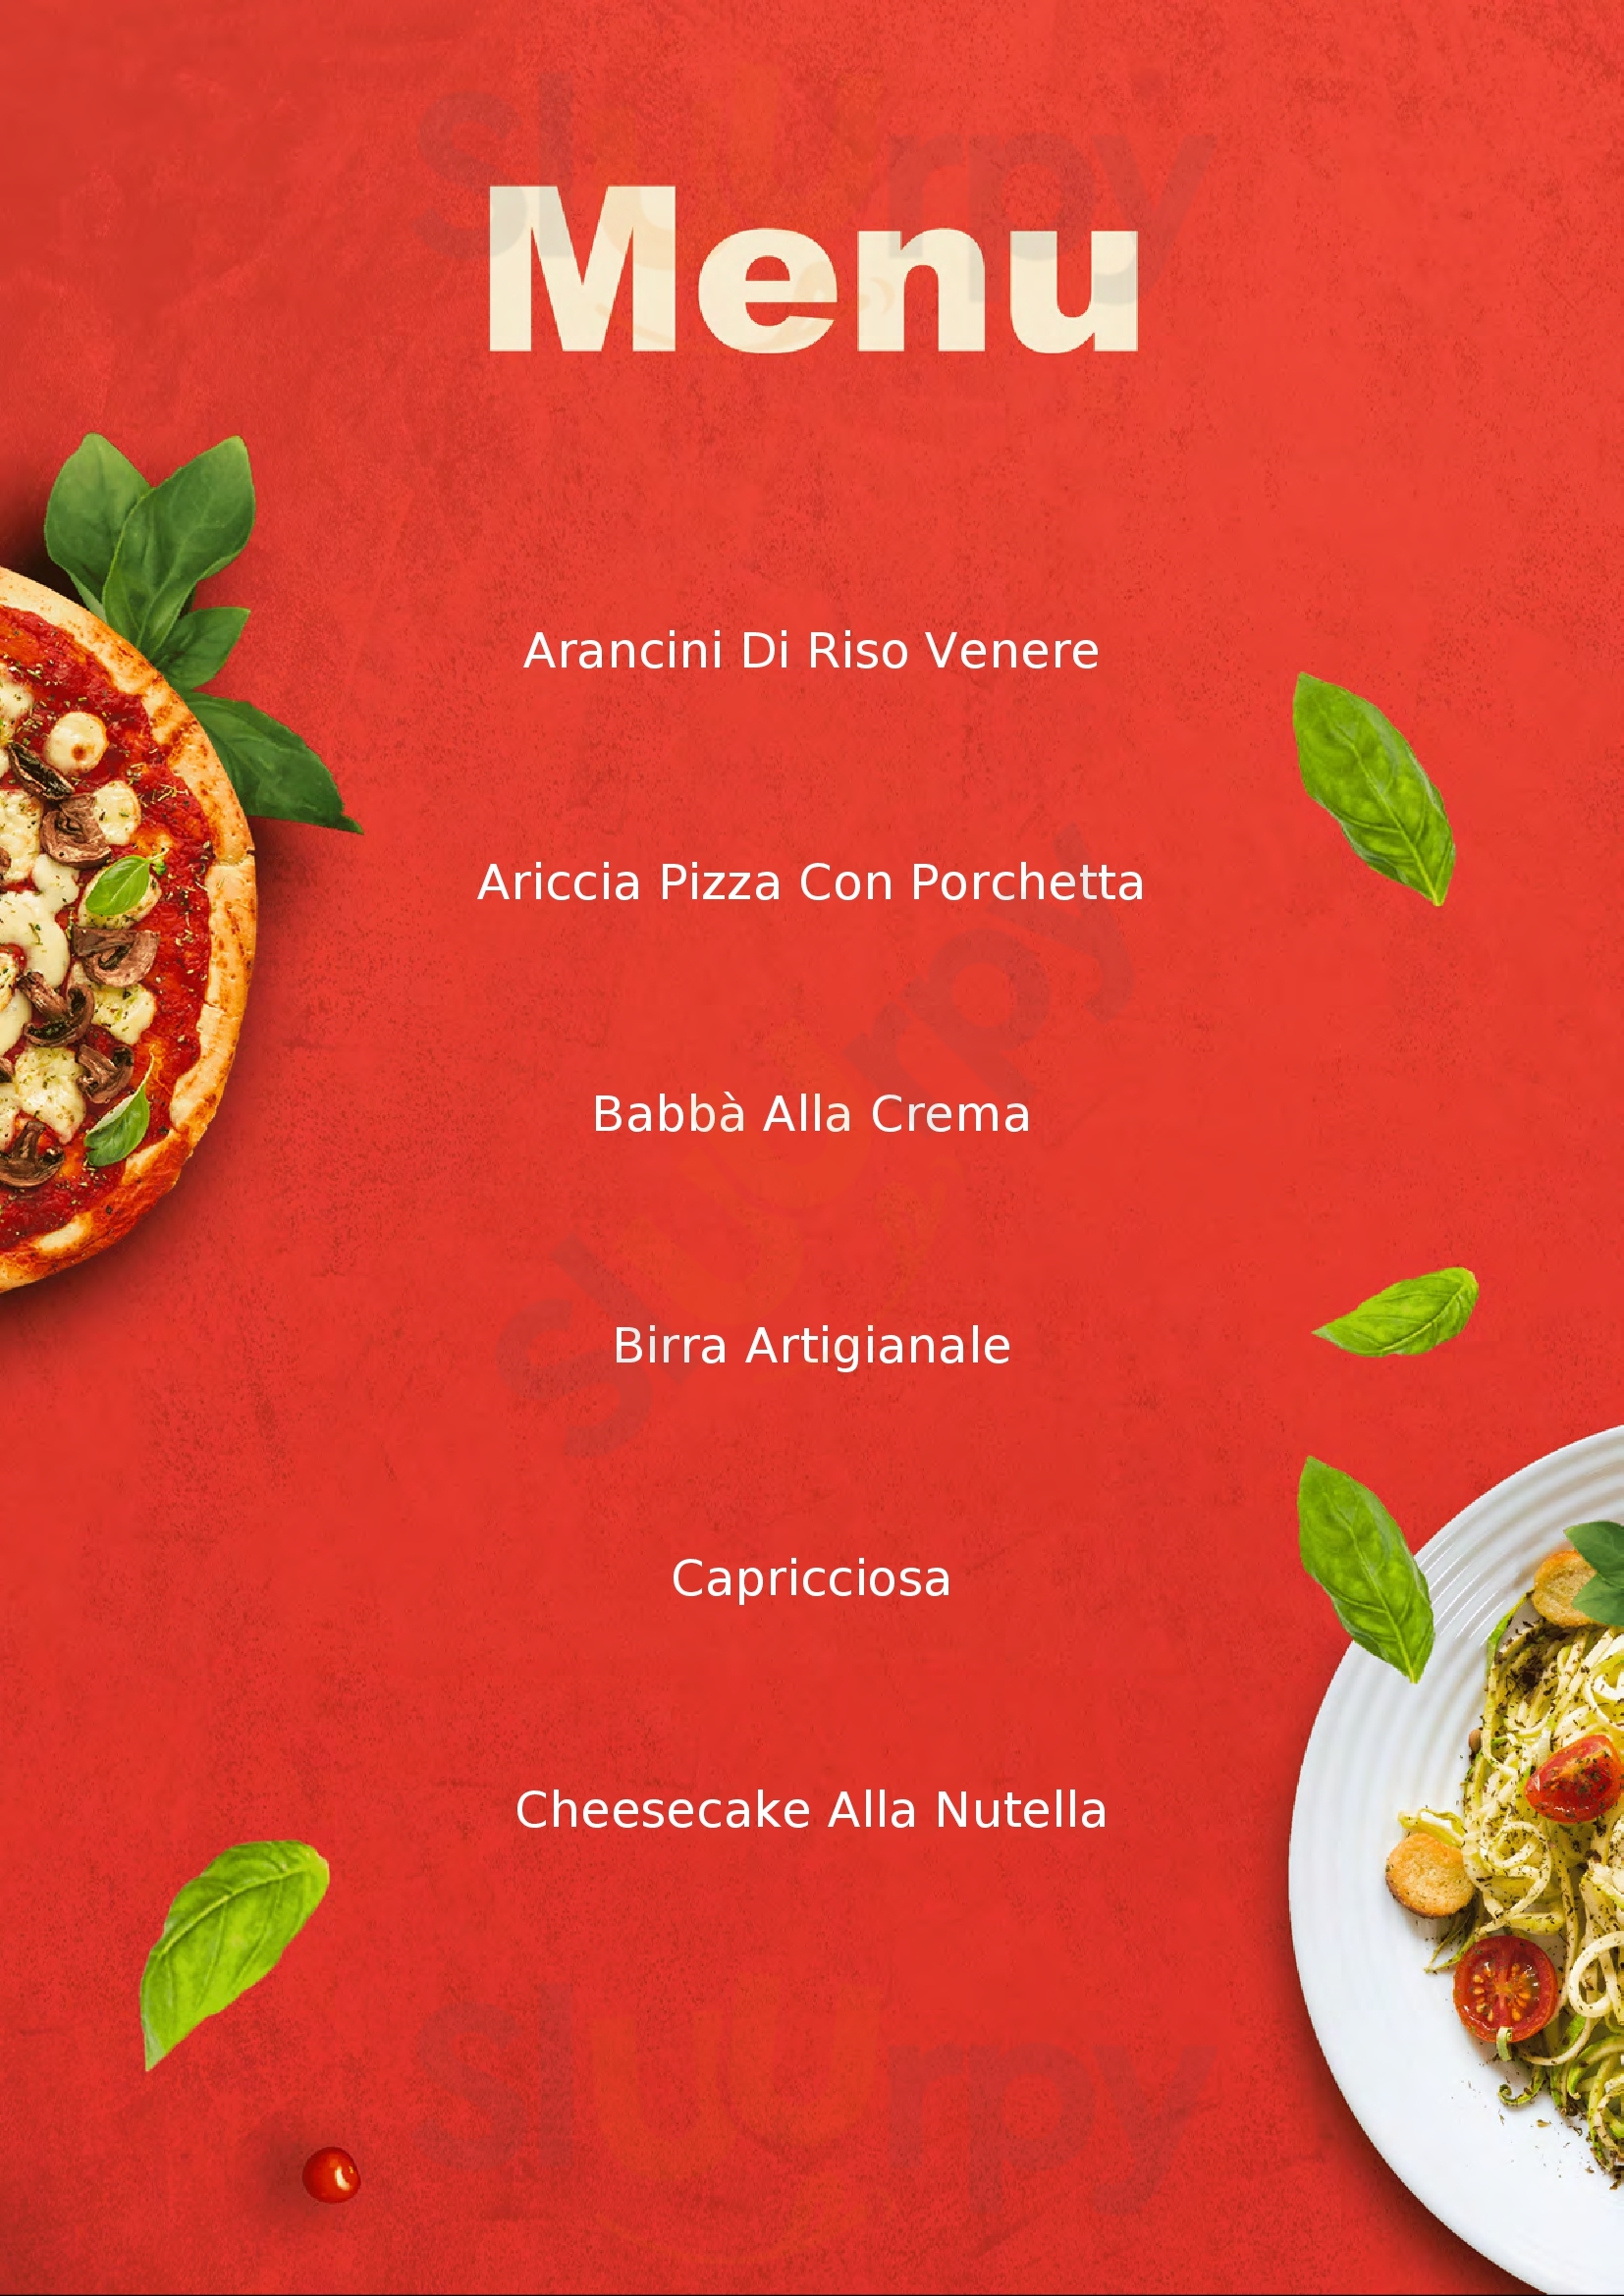 Pasqualino Pizza & Vino Reggio Calabria menù 1 pagina